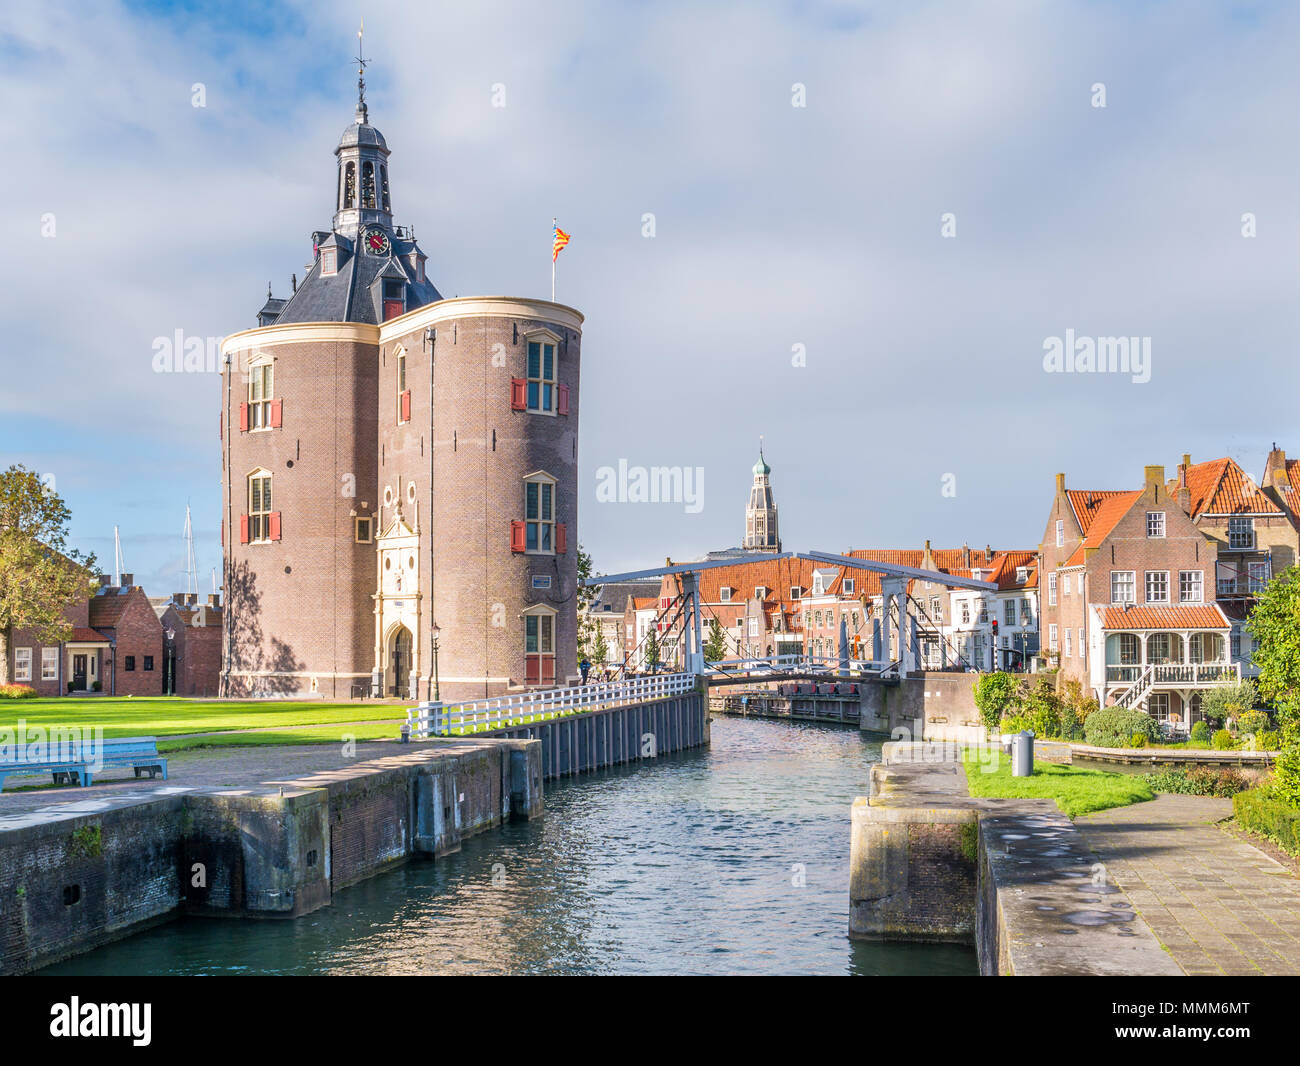 Drommedaris torre di difesa e disegnare ponte sul canal nel porto vecchio della città storica di Enkhuizen, Noord-Holland, Paesi Bassi Foto Stock